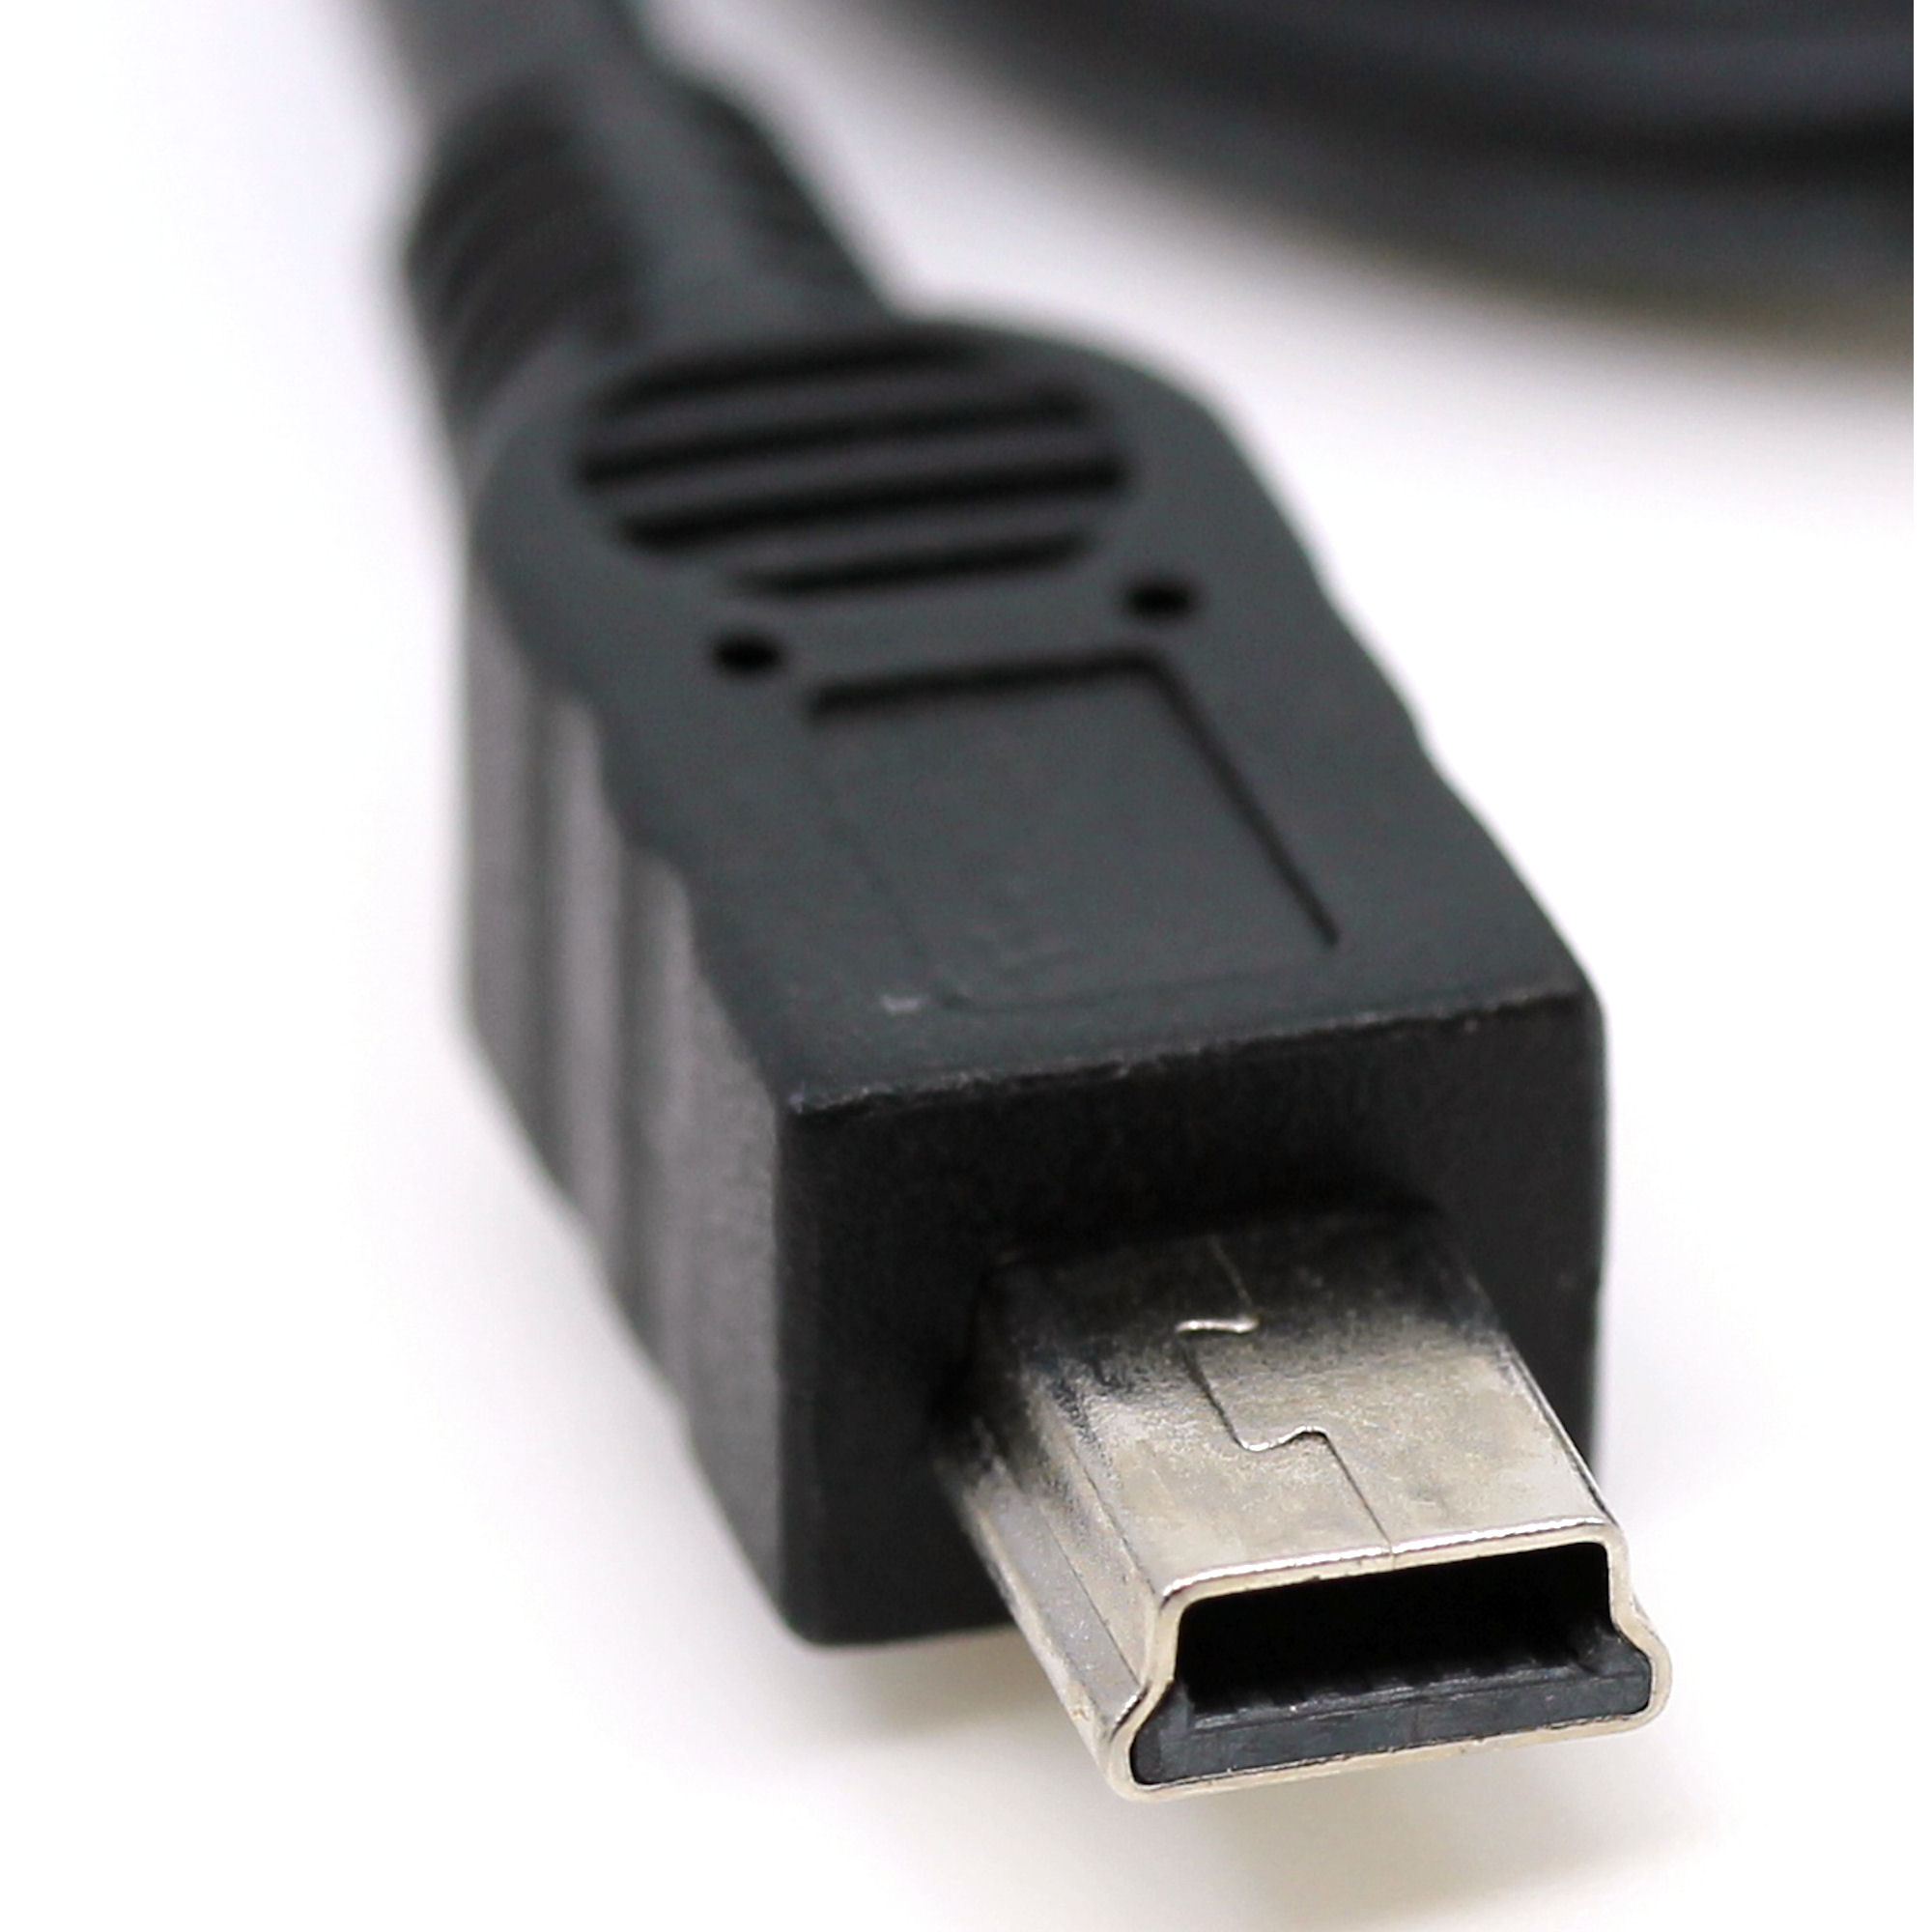 USB Datenkabel für Casio CFX-9850GA Plus, CFX-9970G, CFX-9850GB Plus, CFX-9950GB Plus, CFX-9850GC